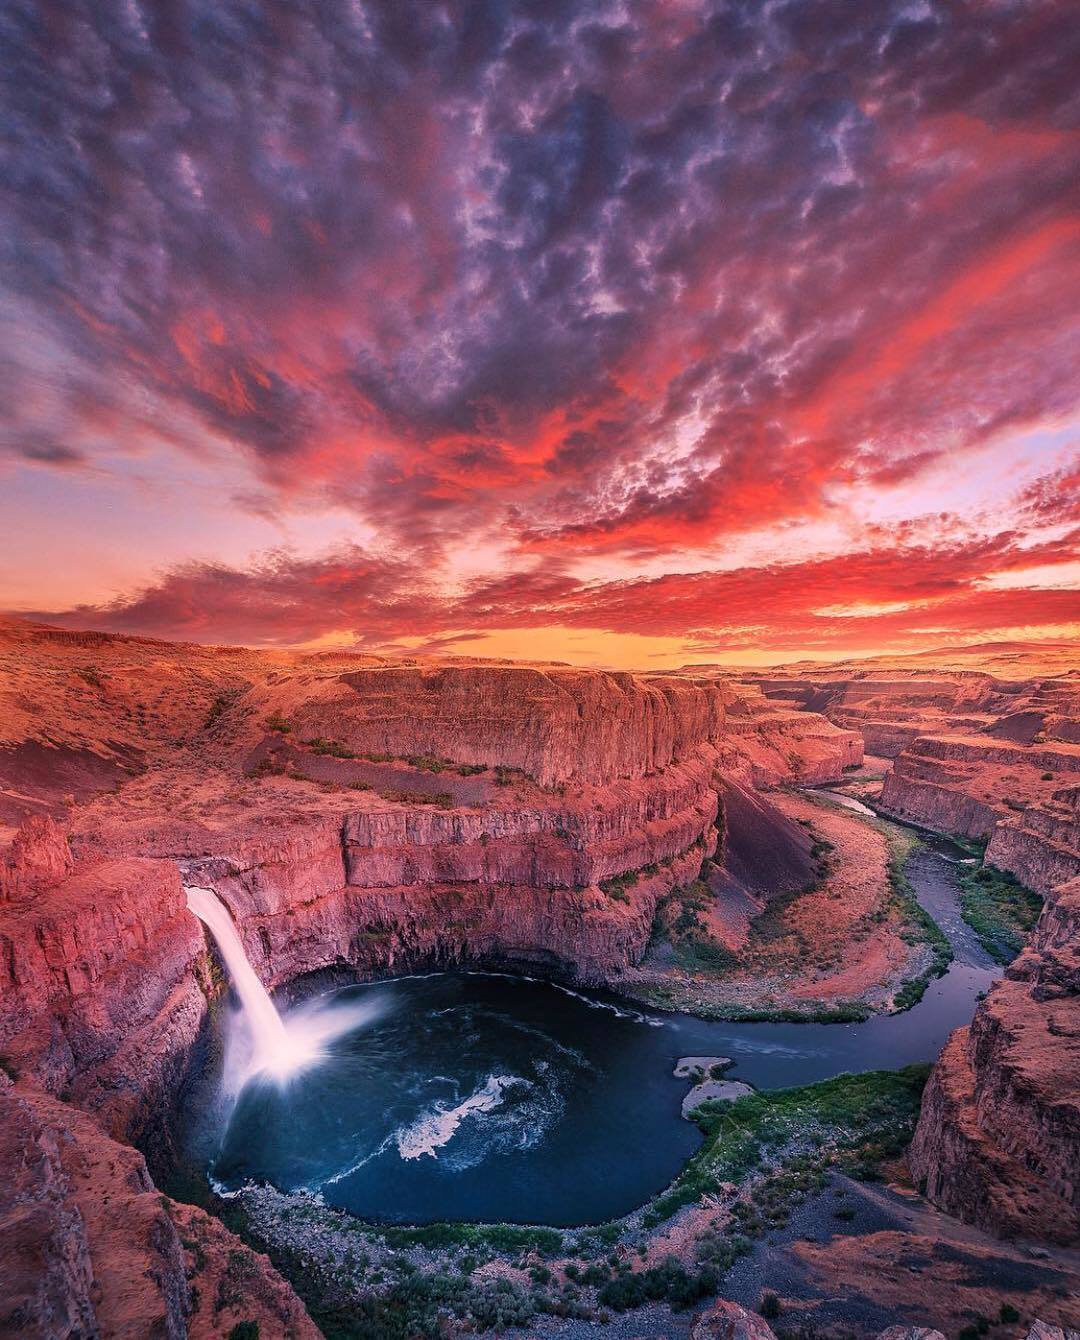  黄昏下的瀑布，Niaz Uddin摄于华盛顿州帕卢斯。 